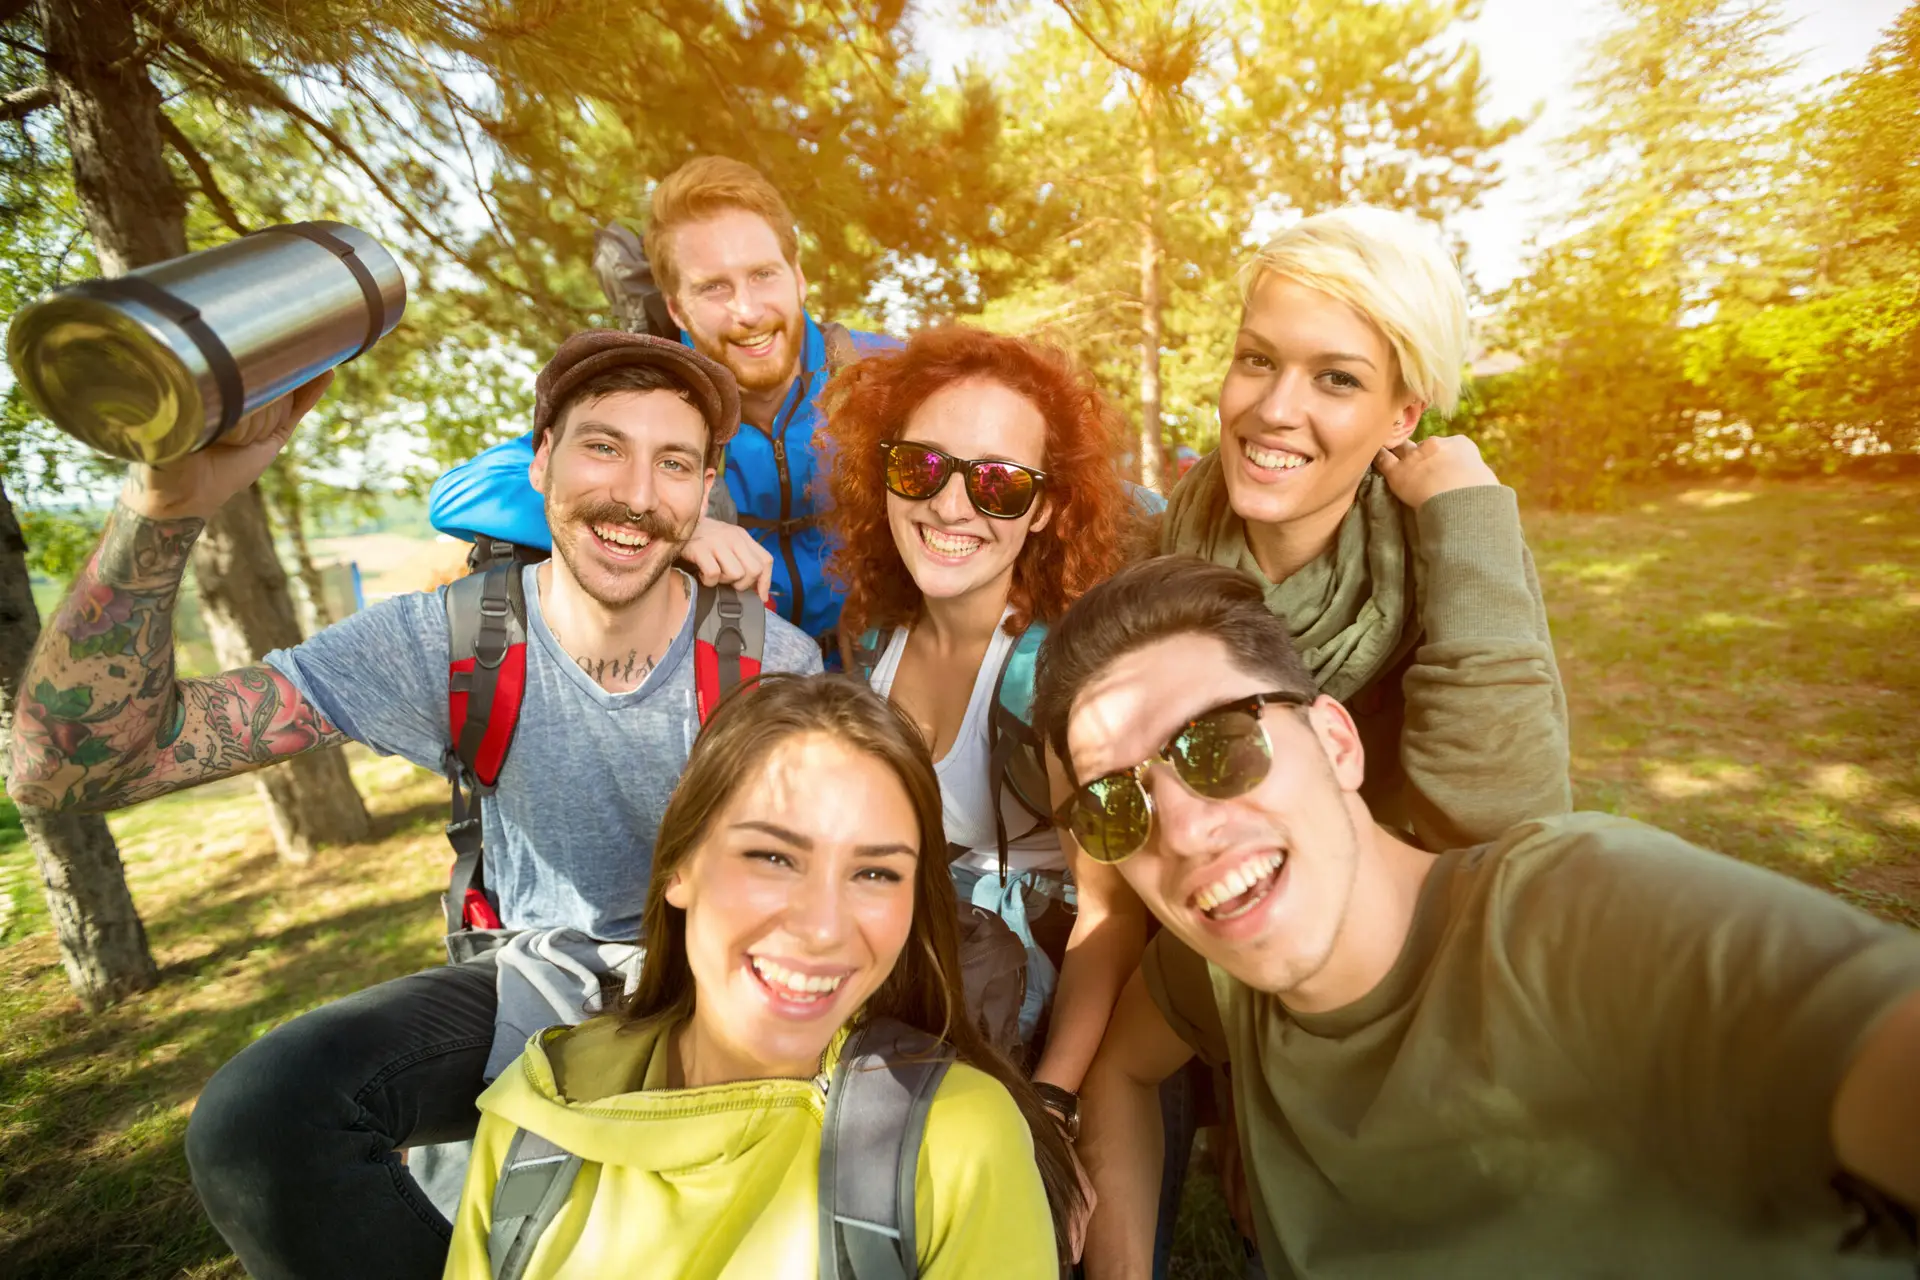 Eine fröhliche, diverse Gruppe von Freunden auf einer Wandertour, die in einem sonnendurchfluteten Wald lachend ein Selfie macht und dabei Gemeinschaft und Freude an Outdoor-Aktivitäten demonstriert.